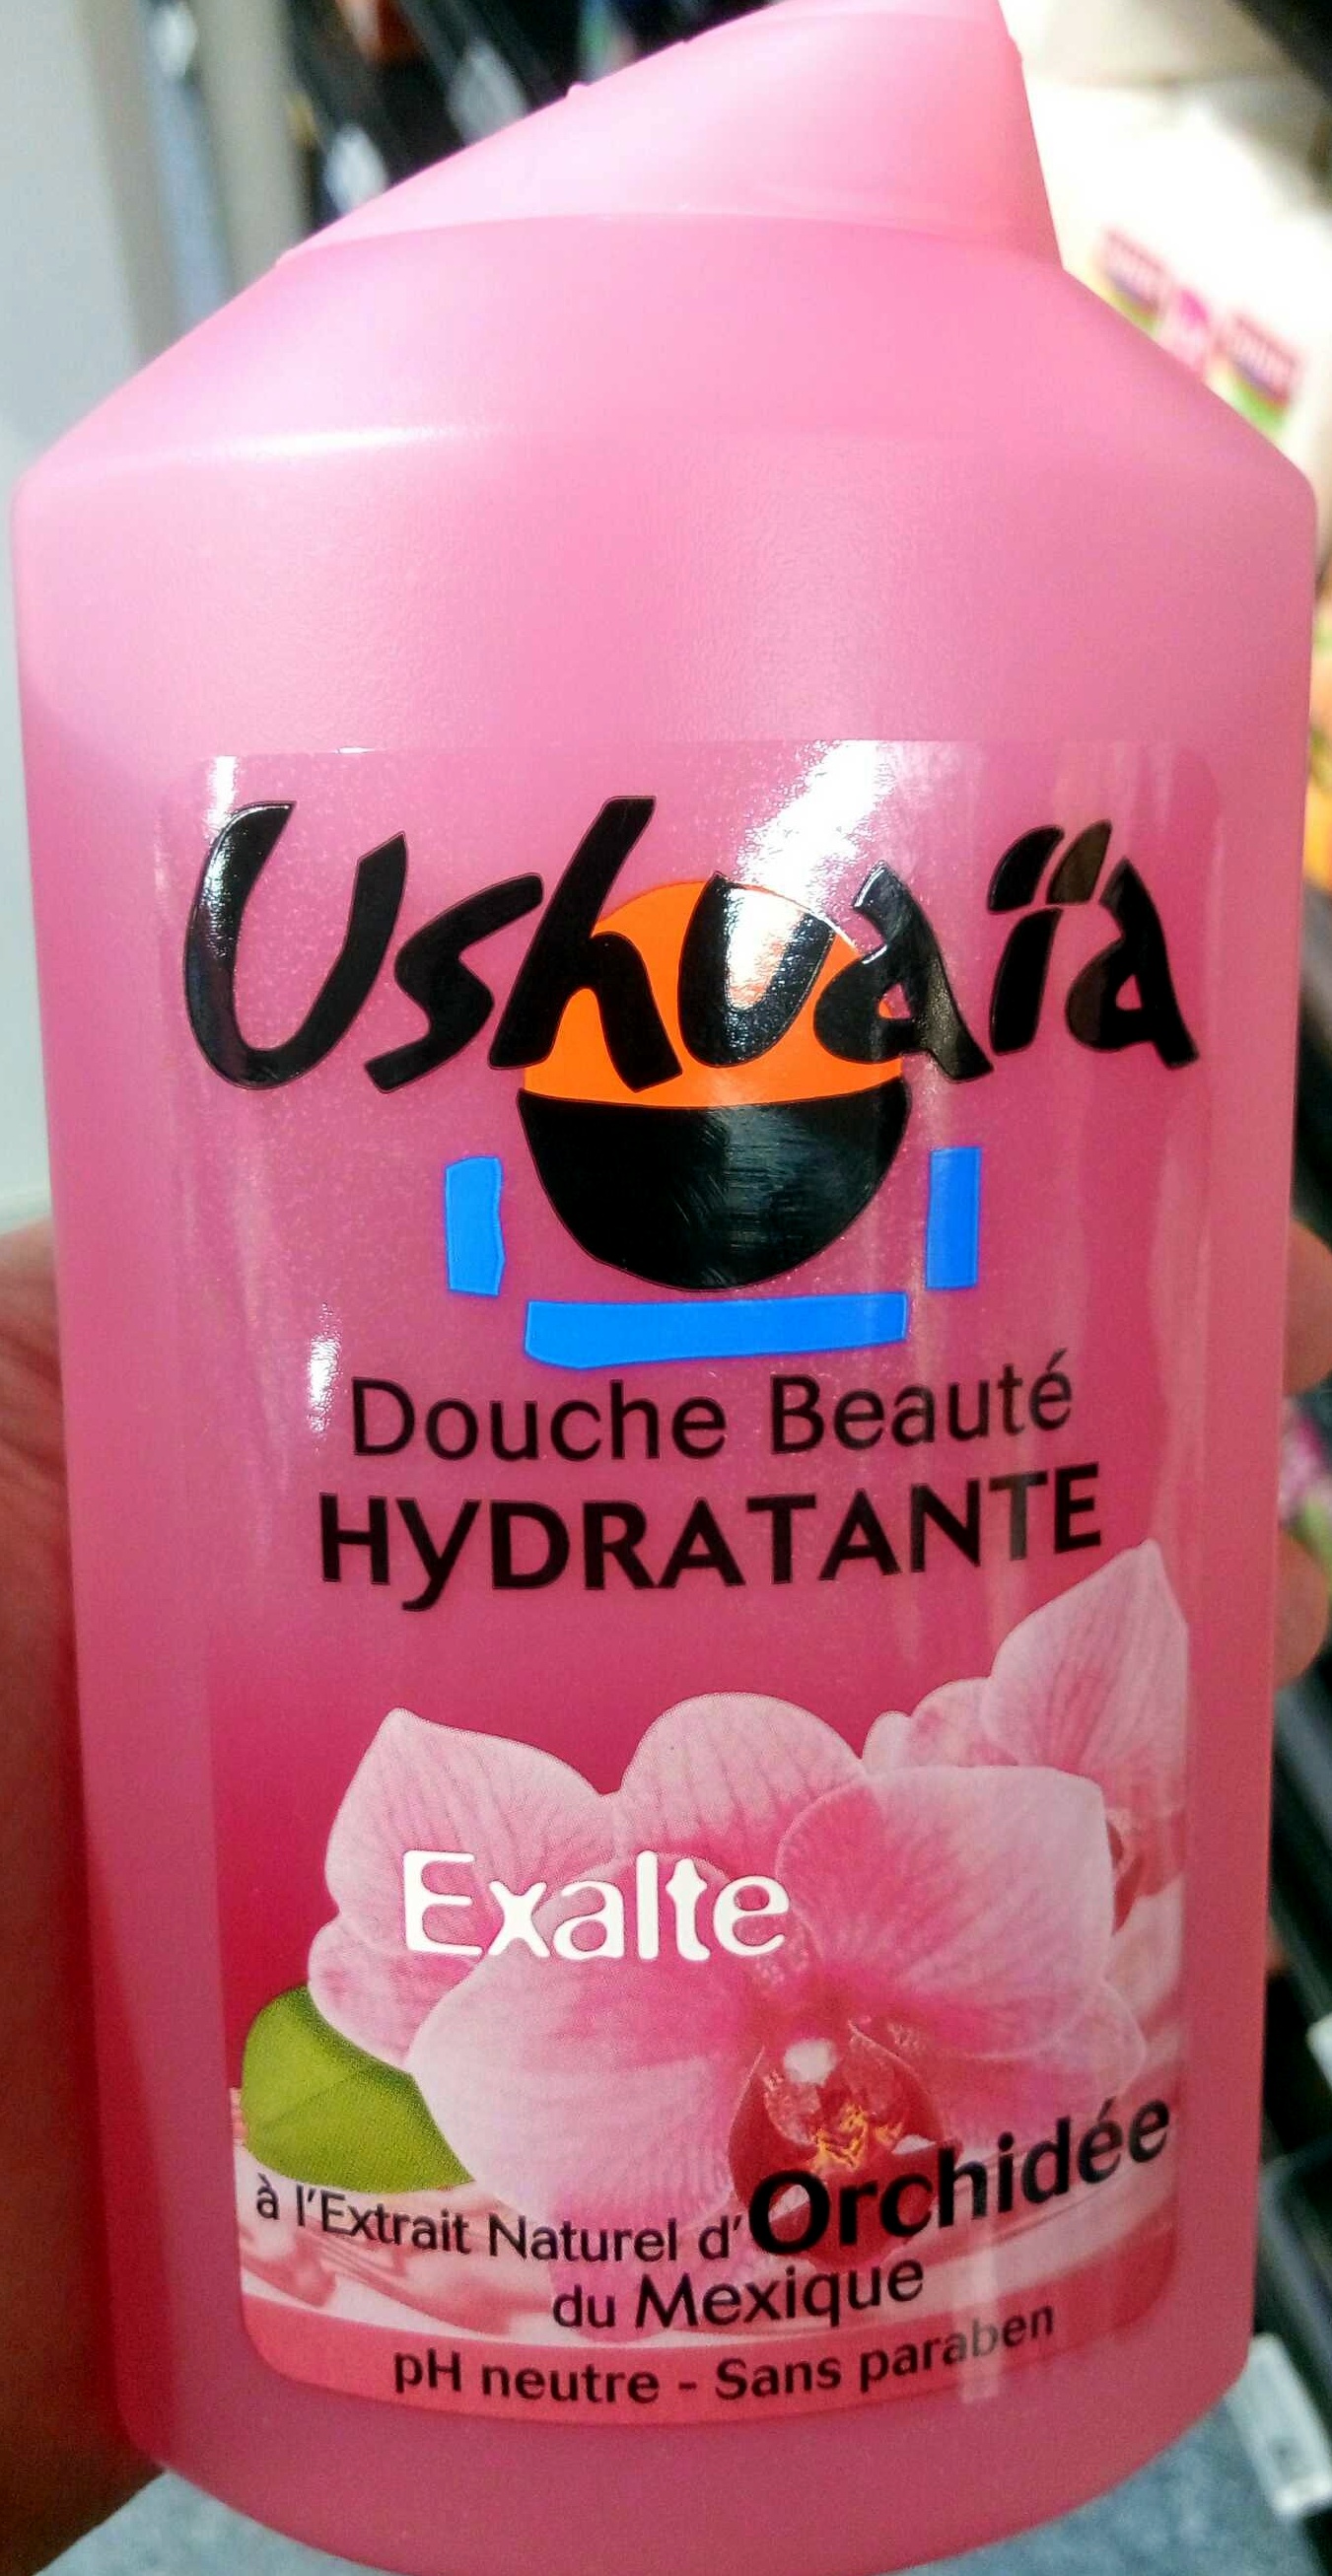 Douche Beauté Hydratante Exalte à l'extrait naturel d'Orchidée du Mexique - Product - fr